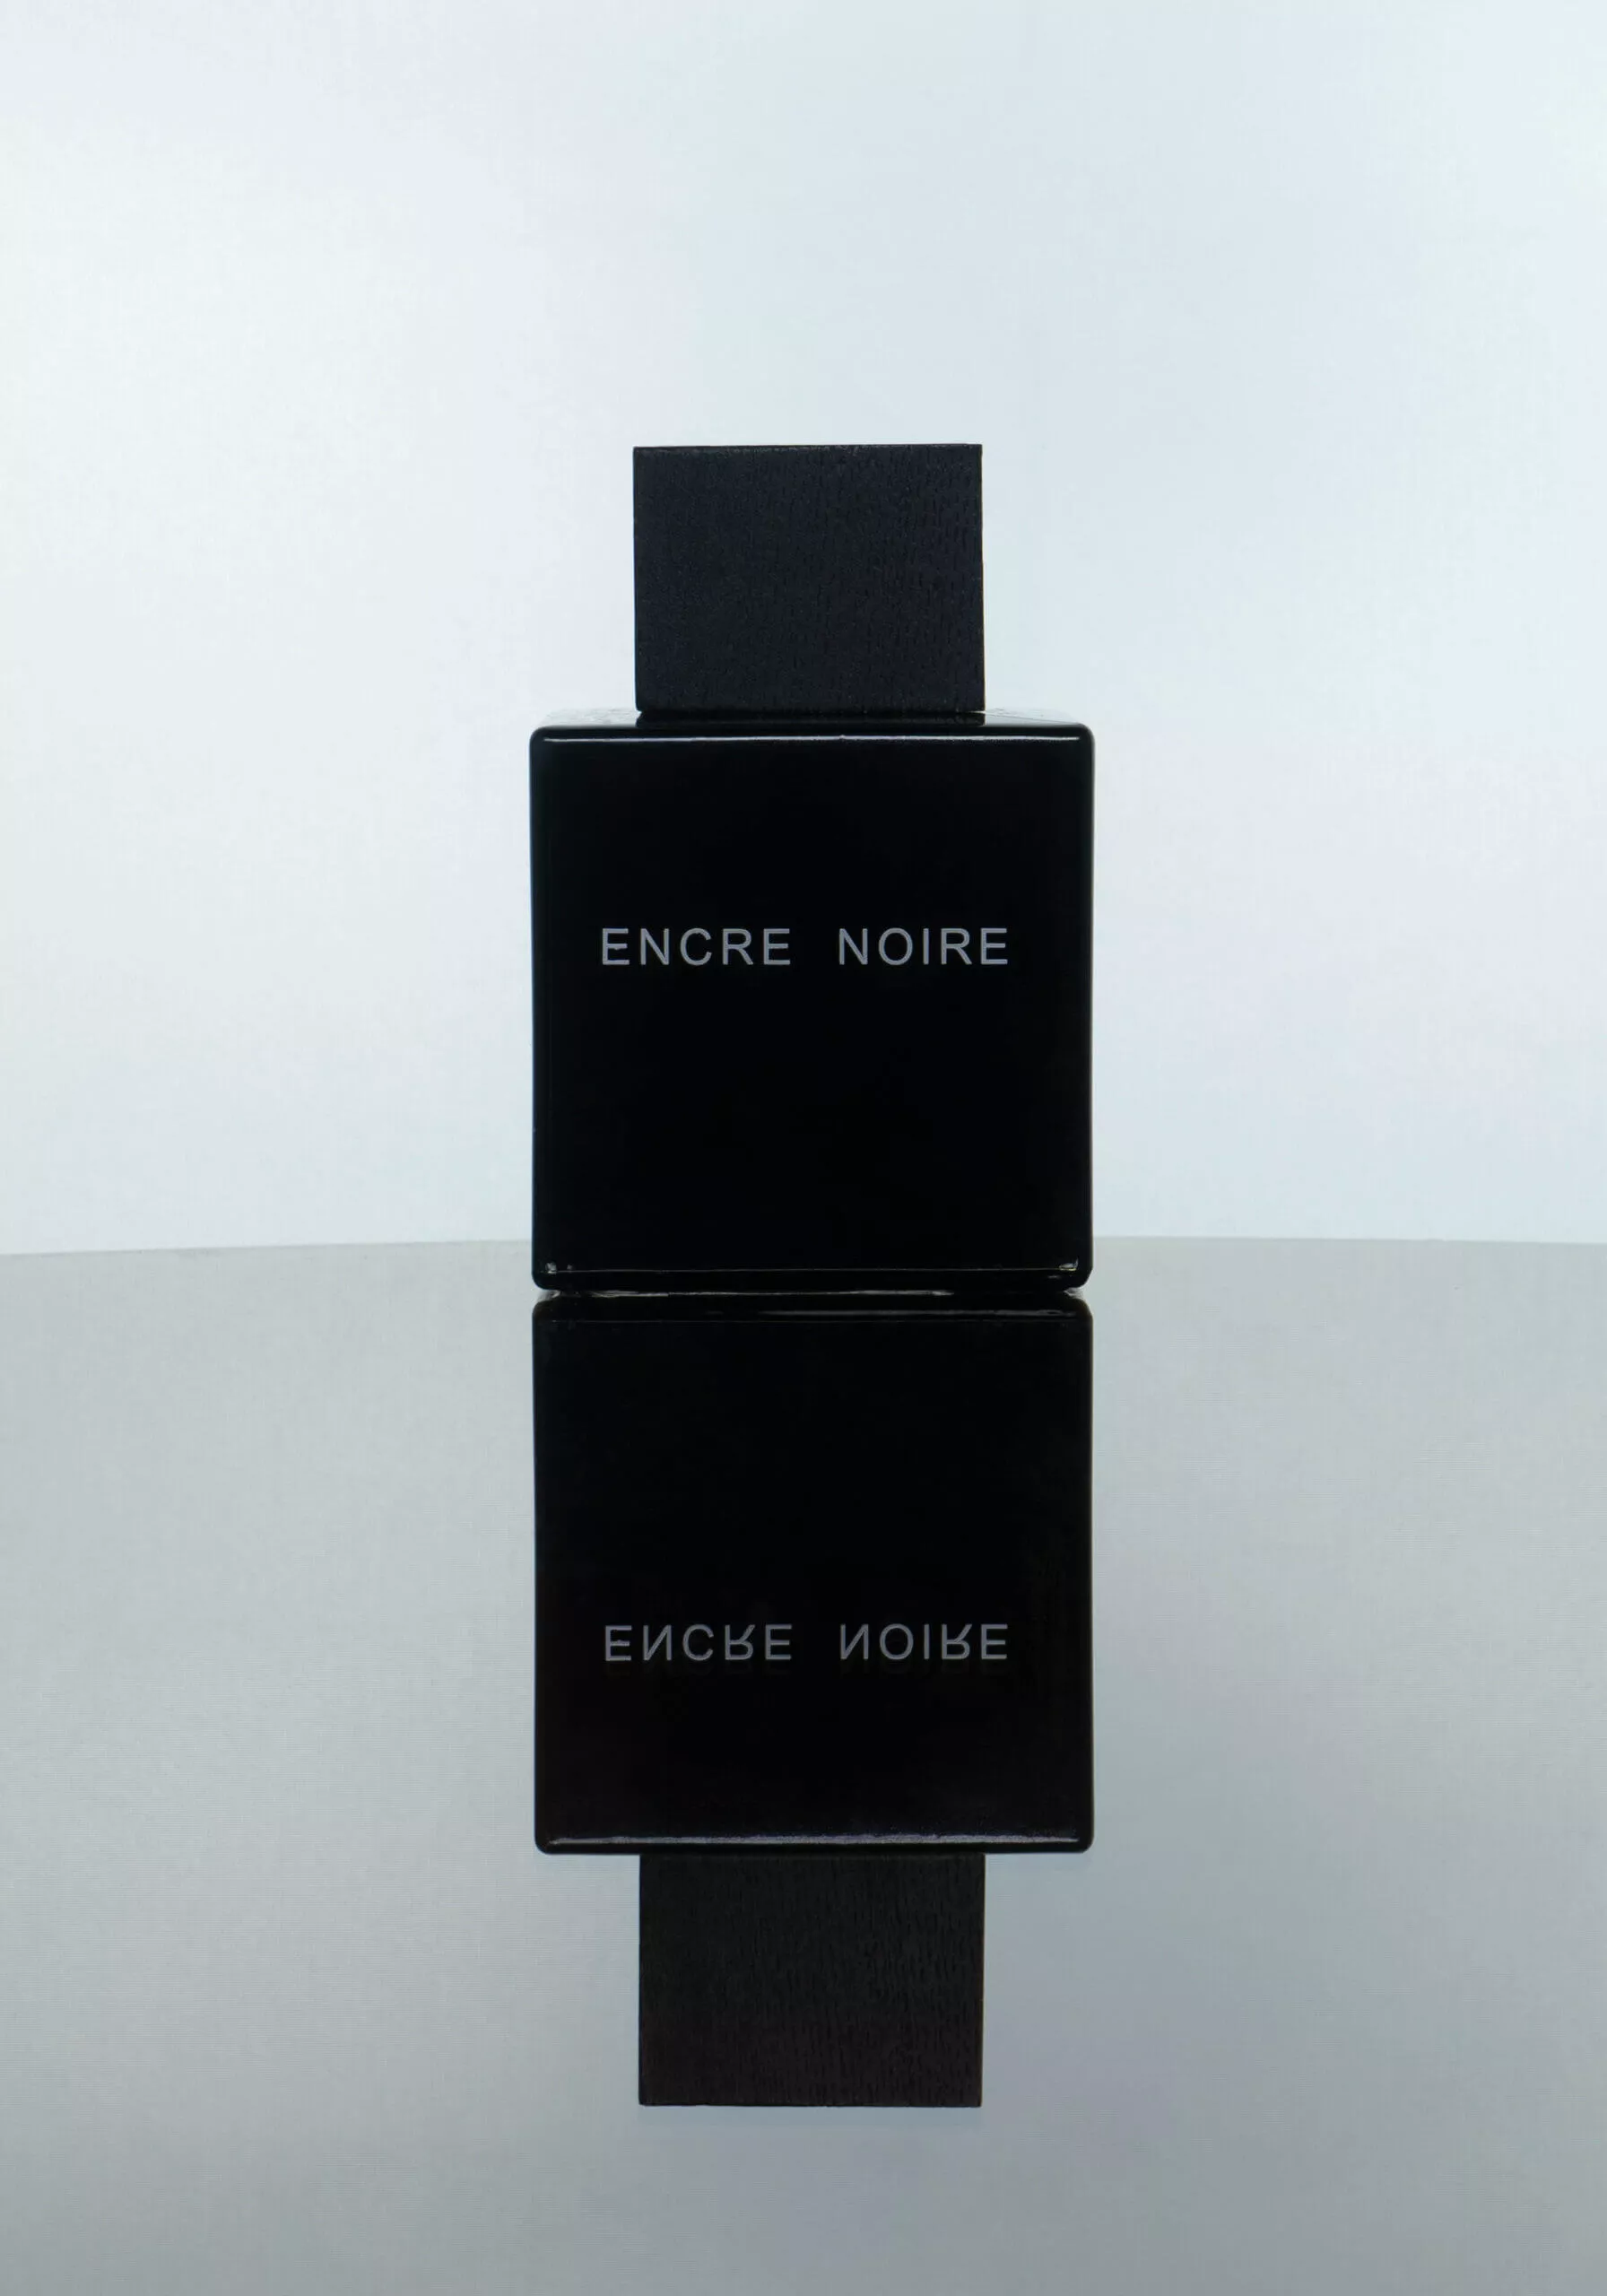 Flacon de parfum Encre Noire, photographié sur un fond clair avec son reflet visible.